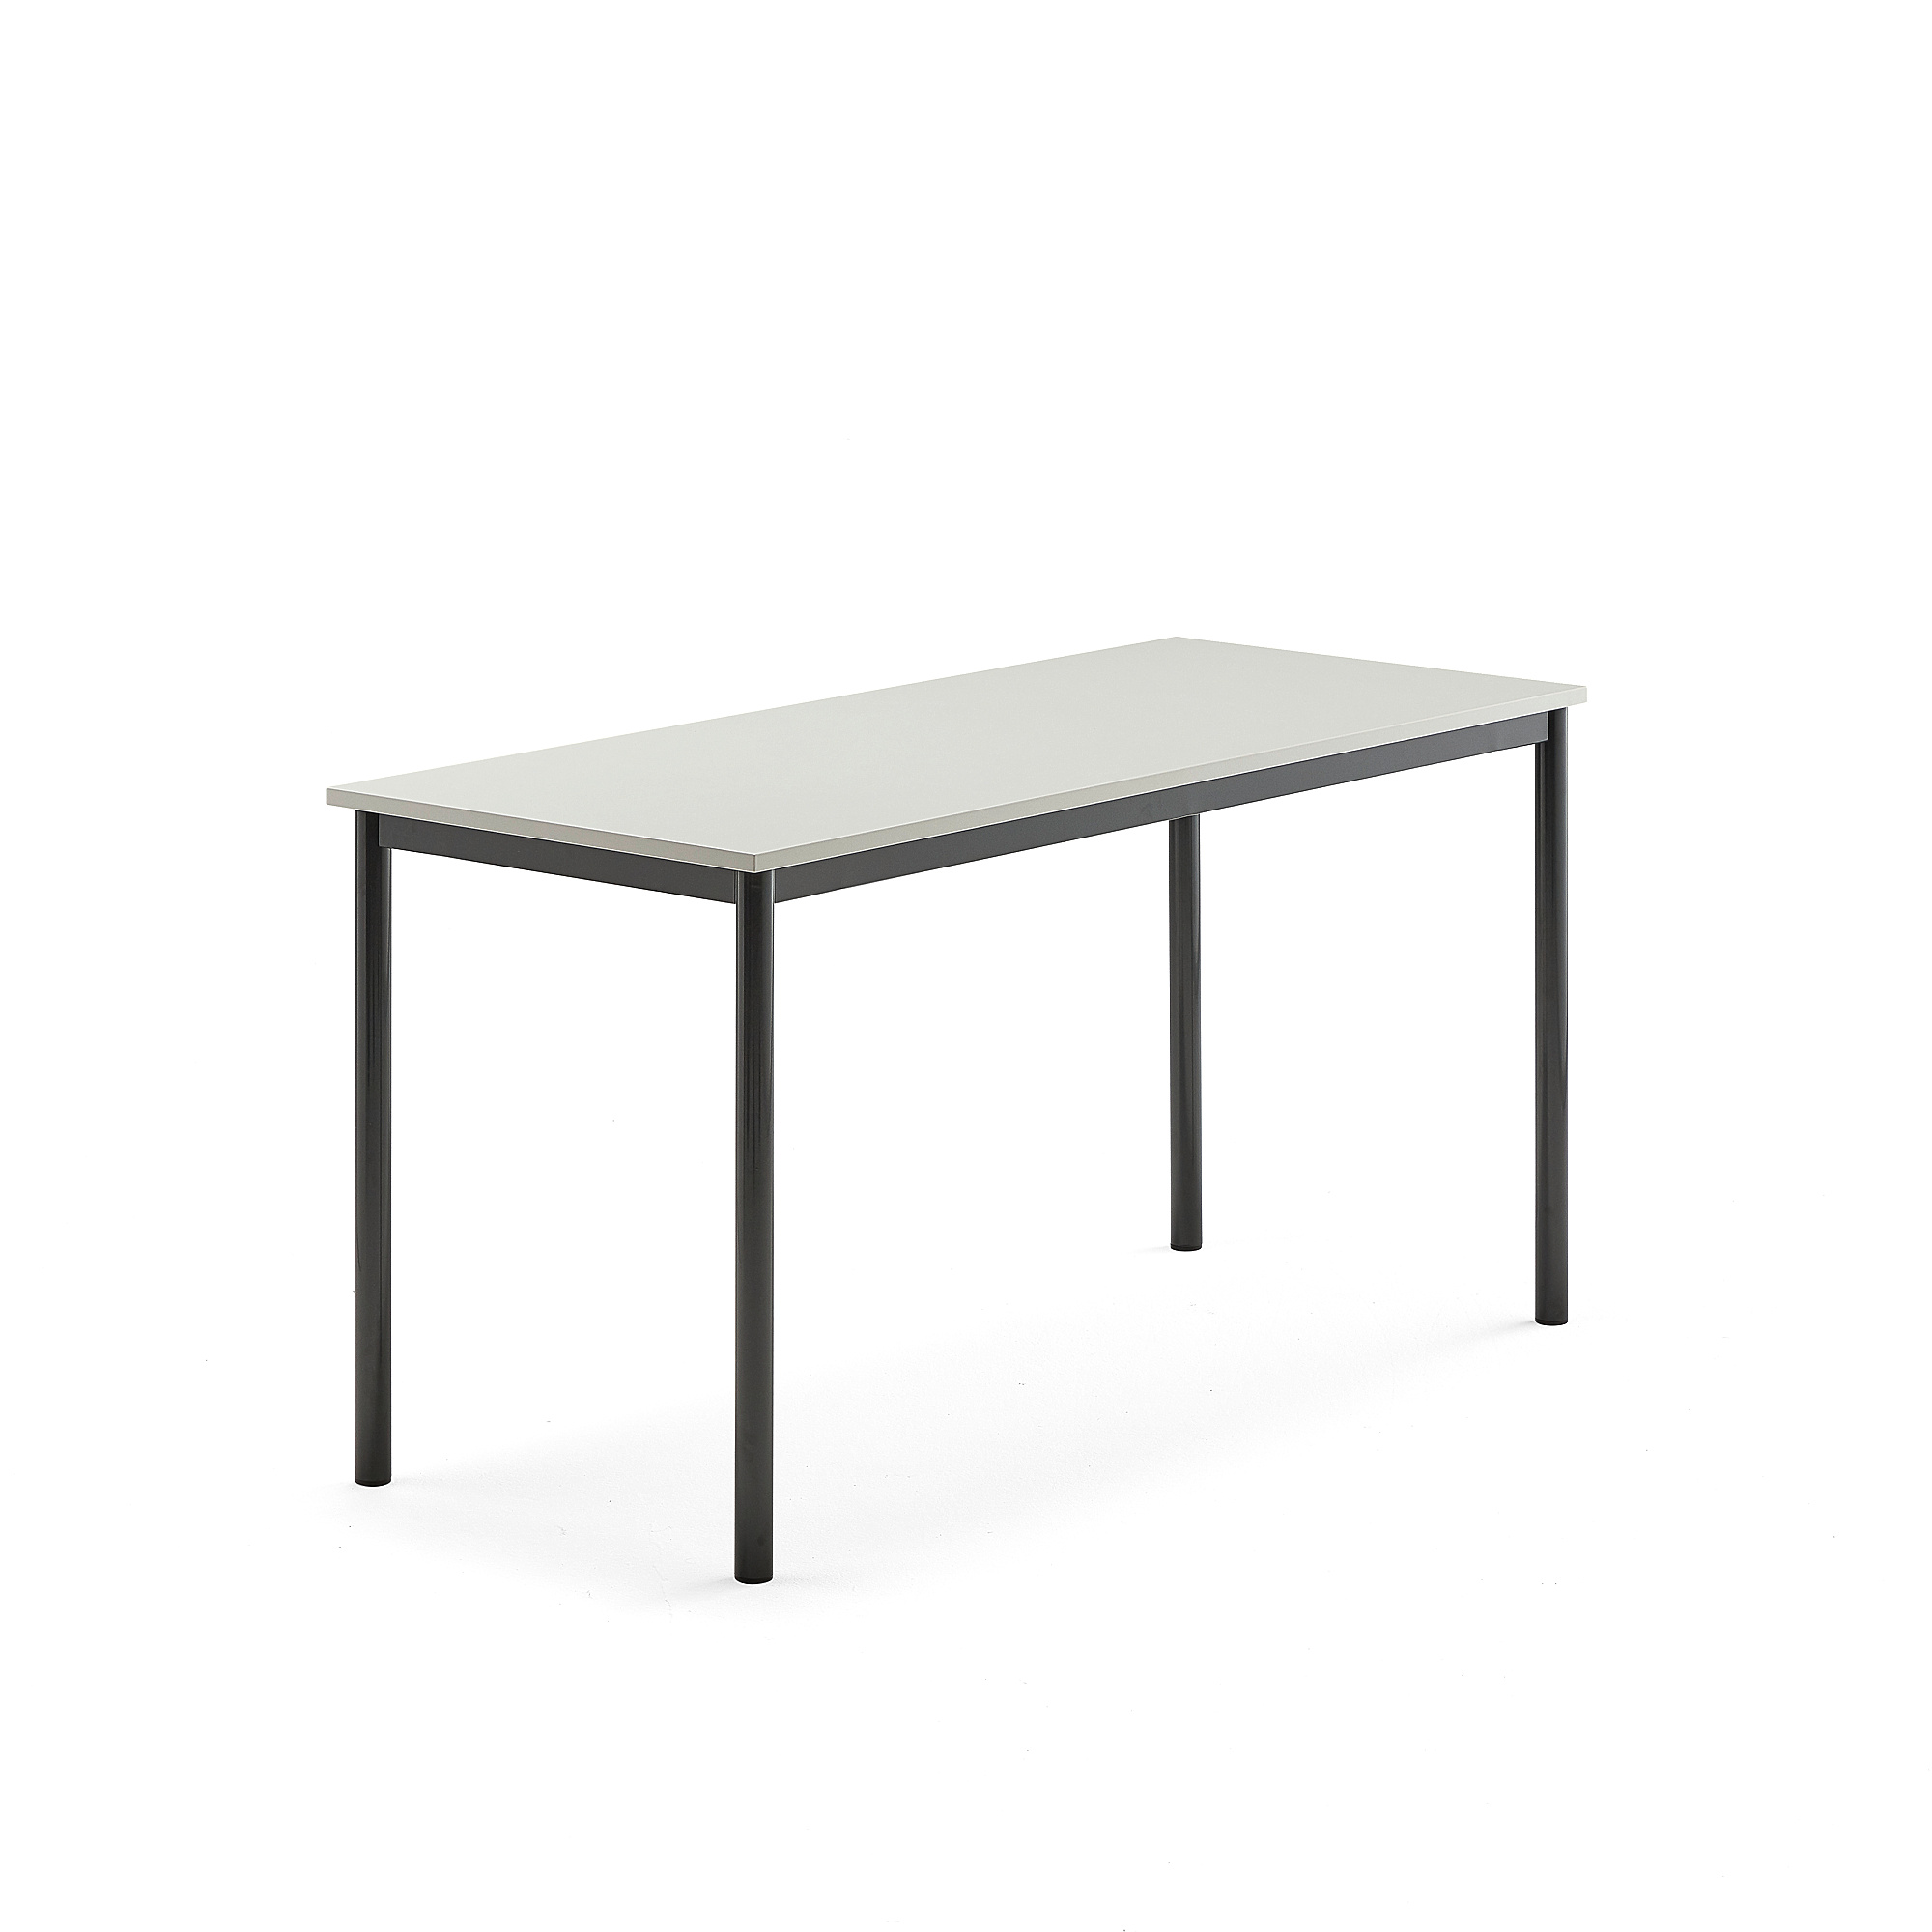 Stůl BORÅS, 1400x600x720 mm, antracitově šedé nohy, HPL deska, šedá